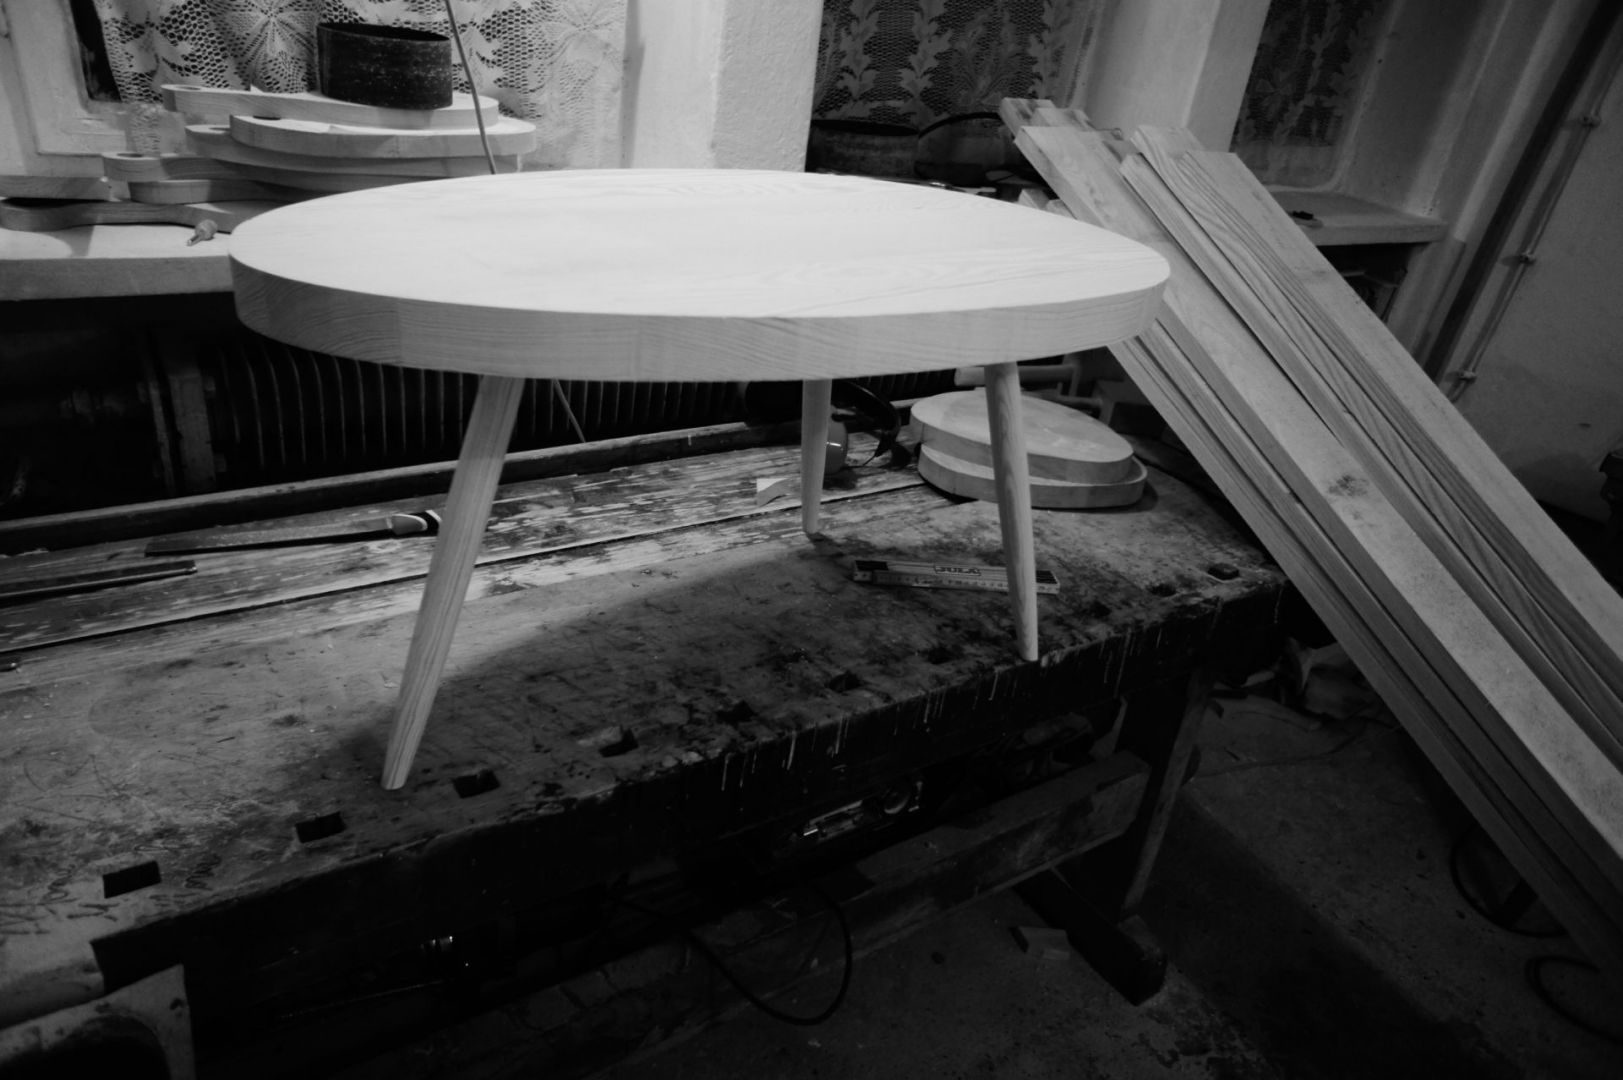 Wykonane nóżki i blat stolika trzeba ze sobą spasować, zanim się je sklei. Fot. Projekt Drewno